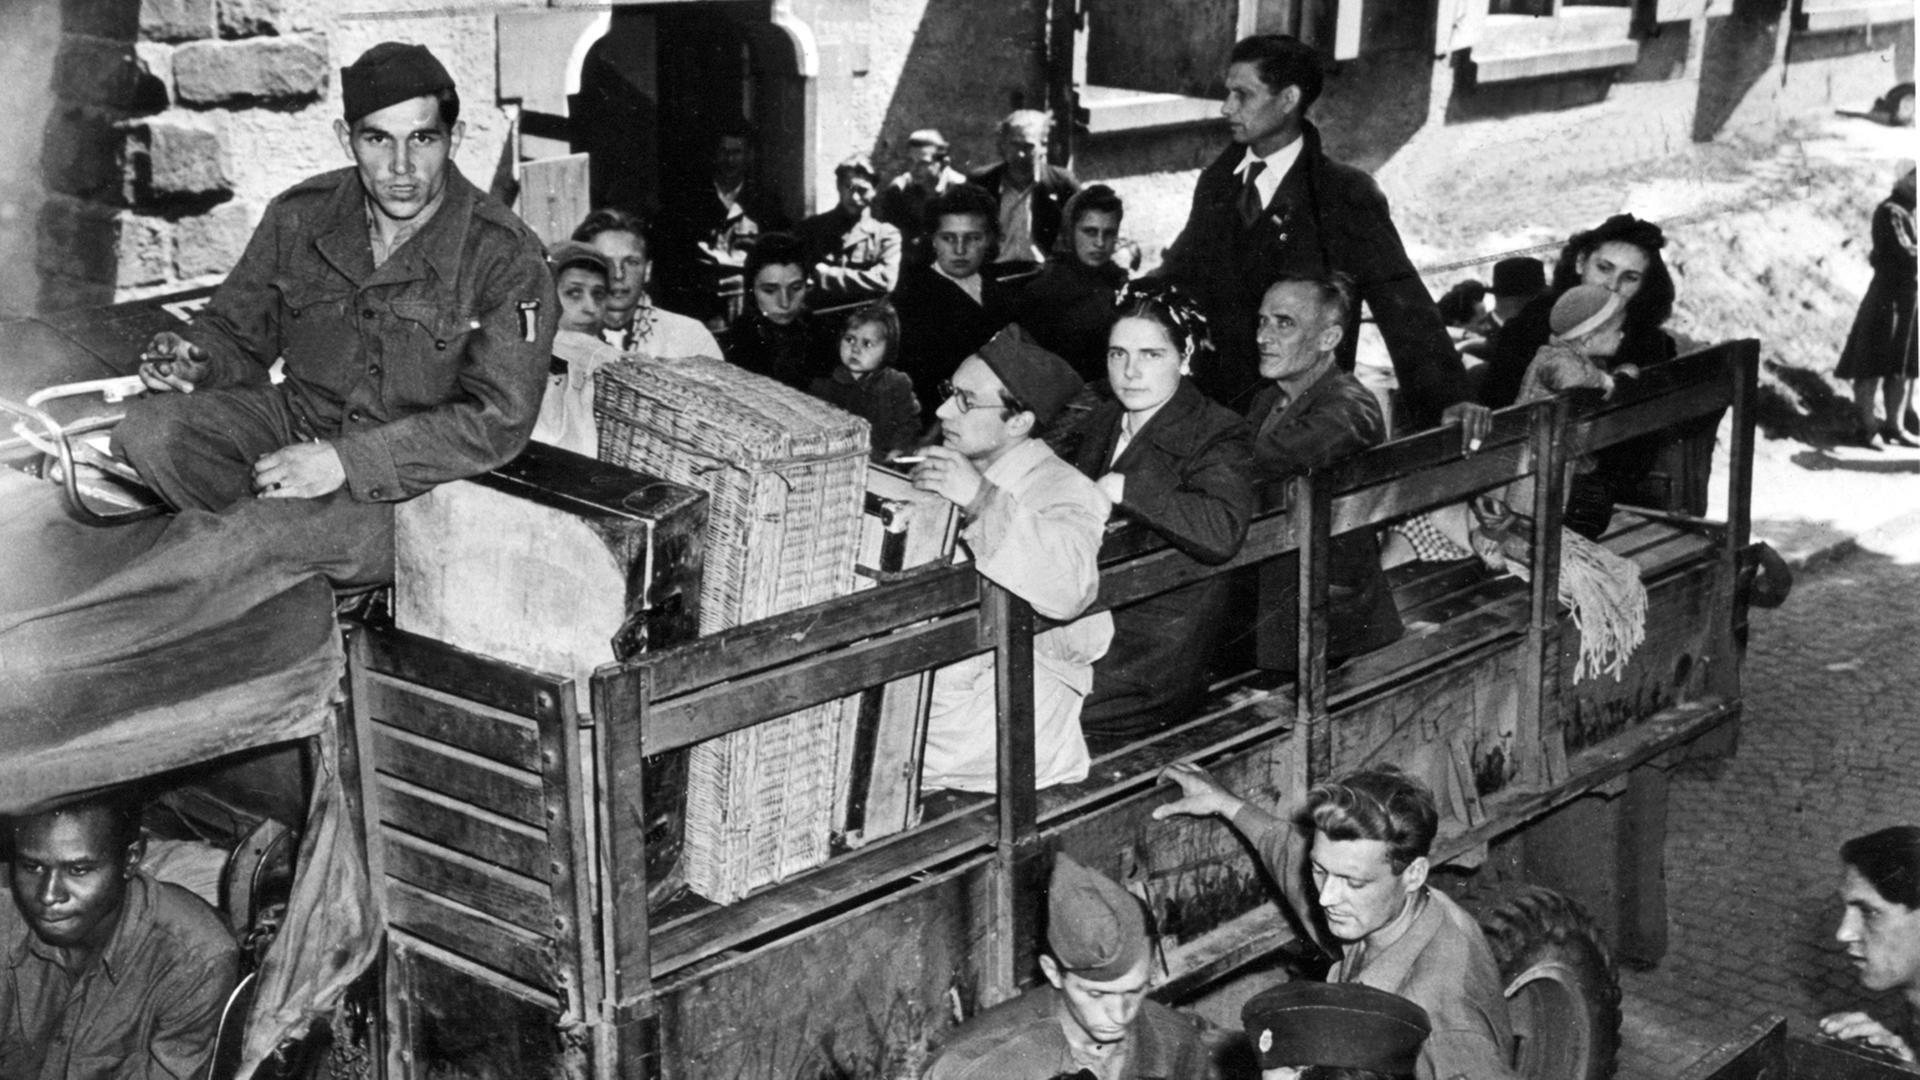 Eine Gruppe Displaced Persons, die in einem Lager in Wiesbaden untergebracht waren, vor ihrer Abreise in ihre Heimat, aufgenommen 1945.